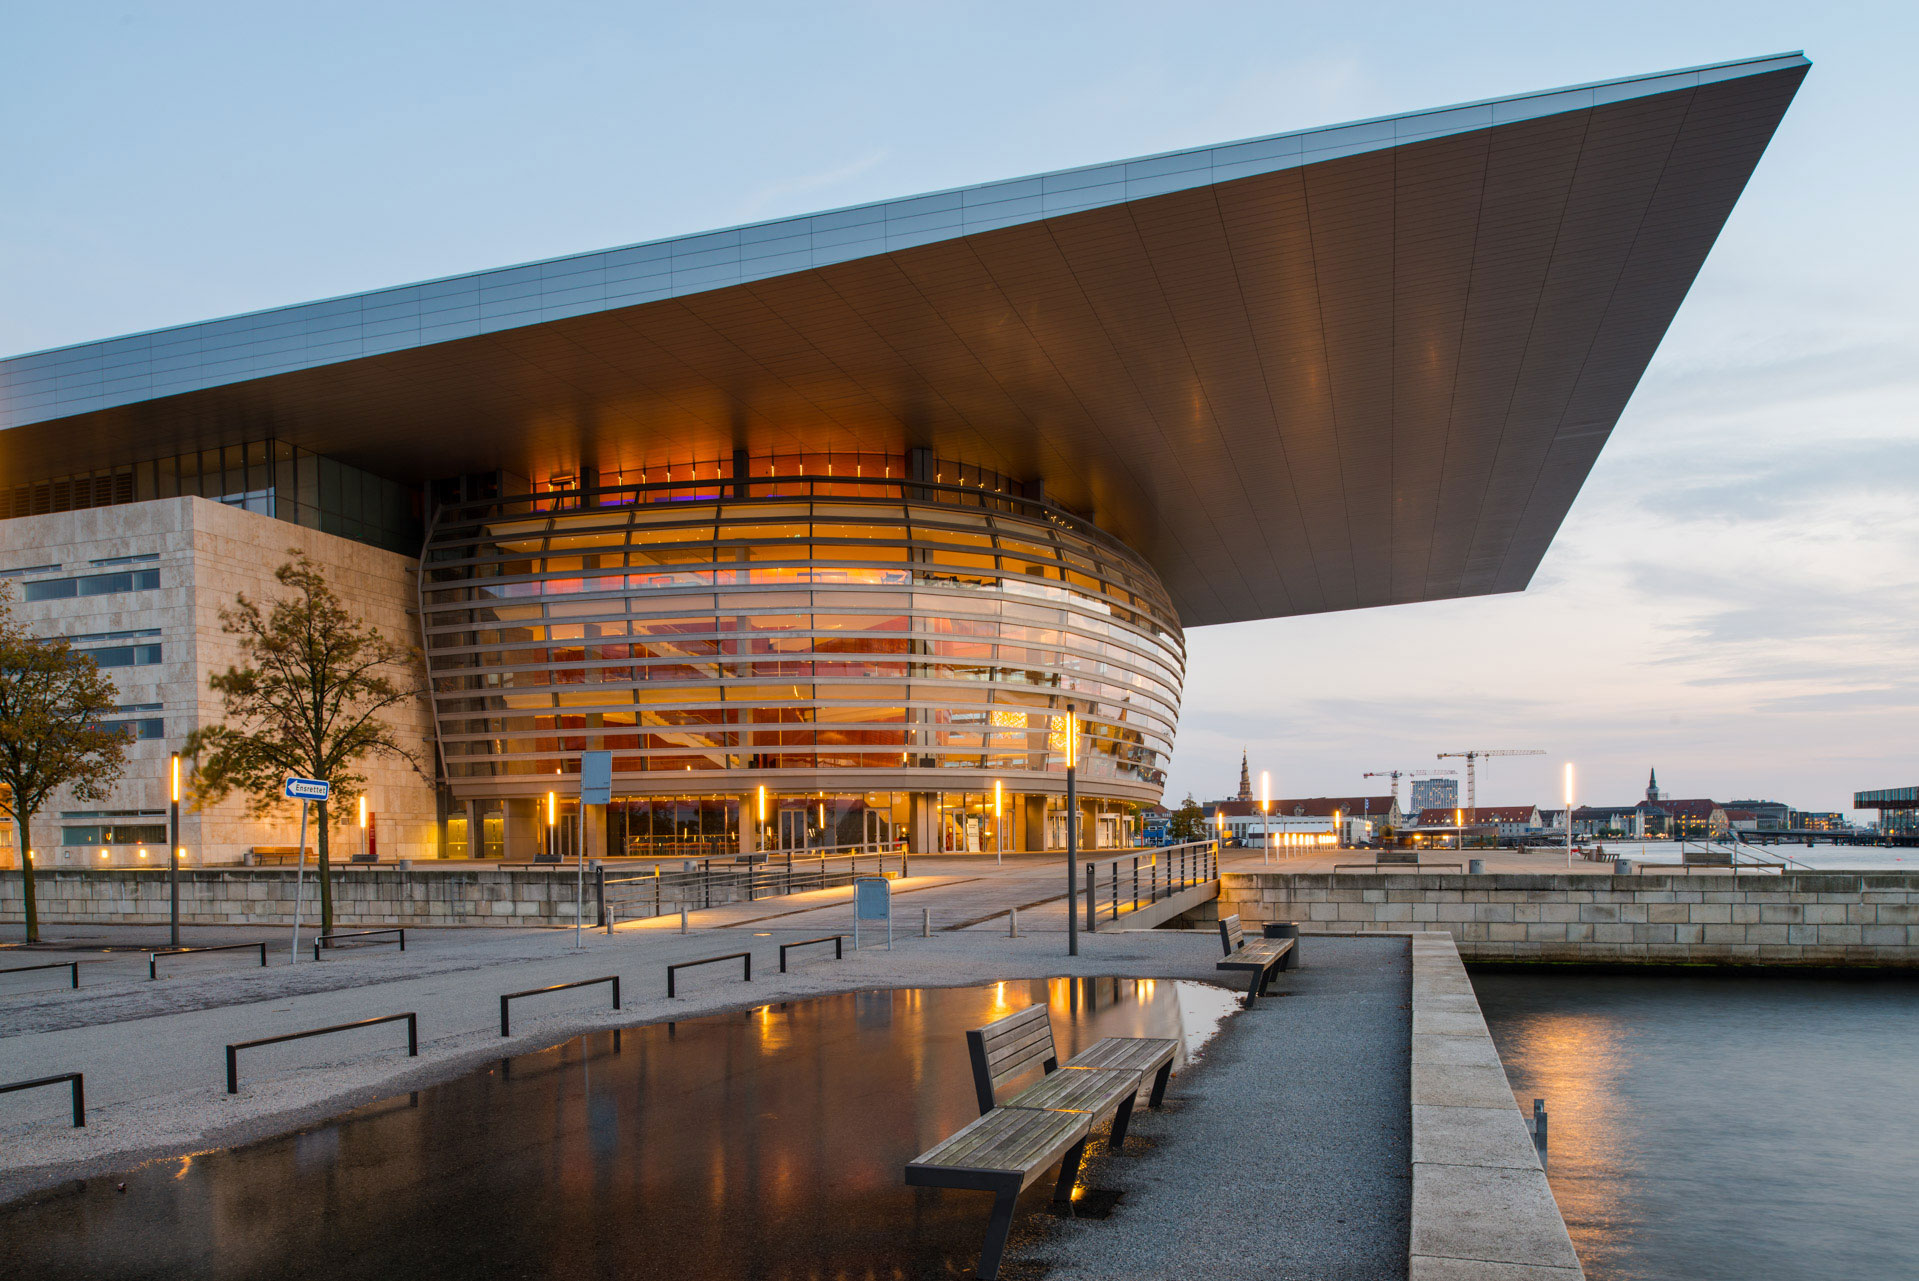 Die Dänische Nationaloper oder auch Königlich Dänische Oper genannt befindet sich in Kopenhagen auf der Insel Holmen